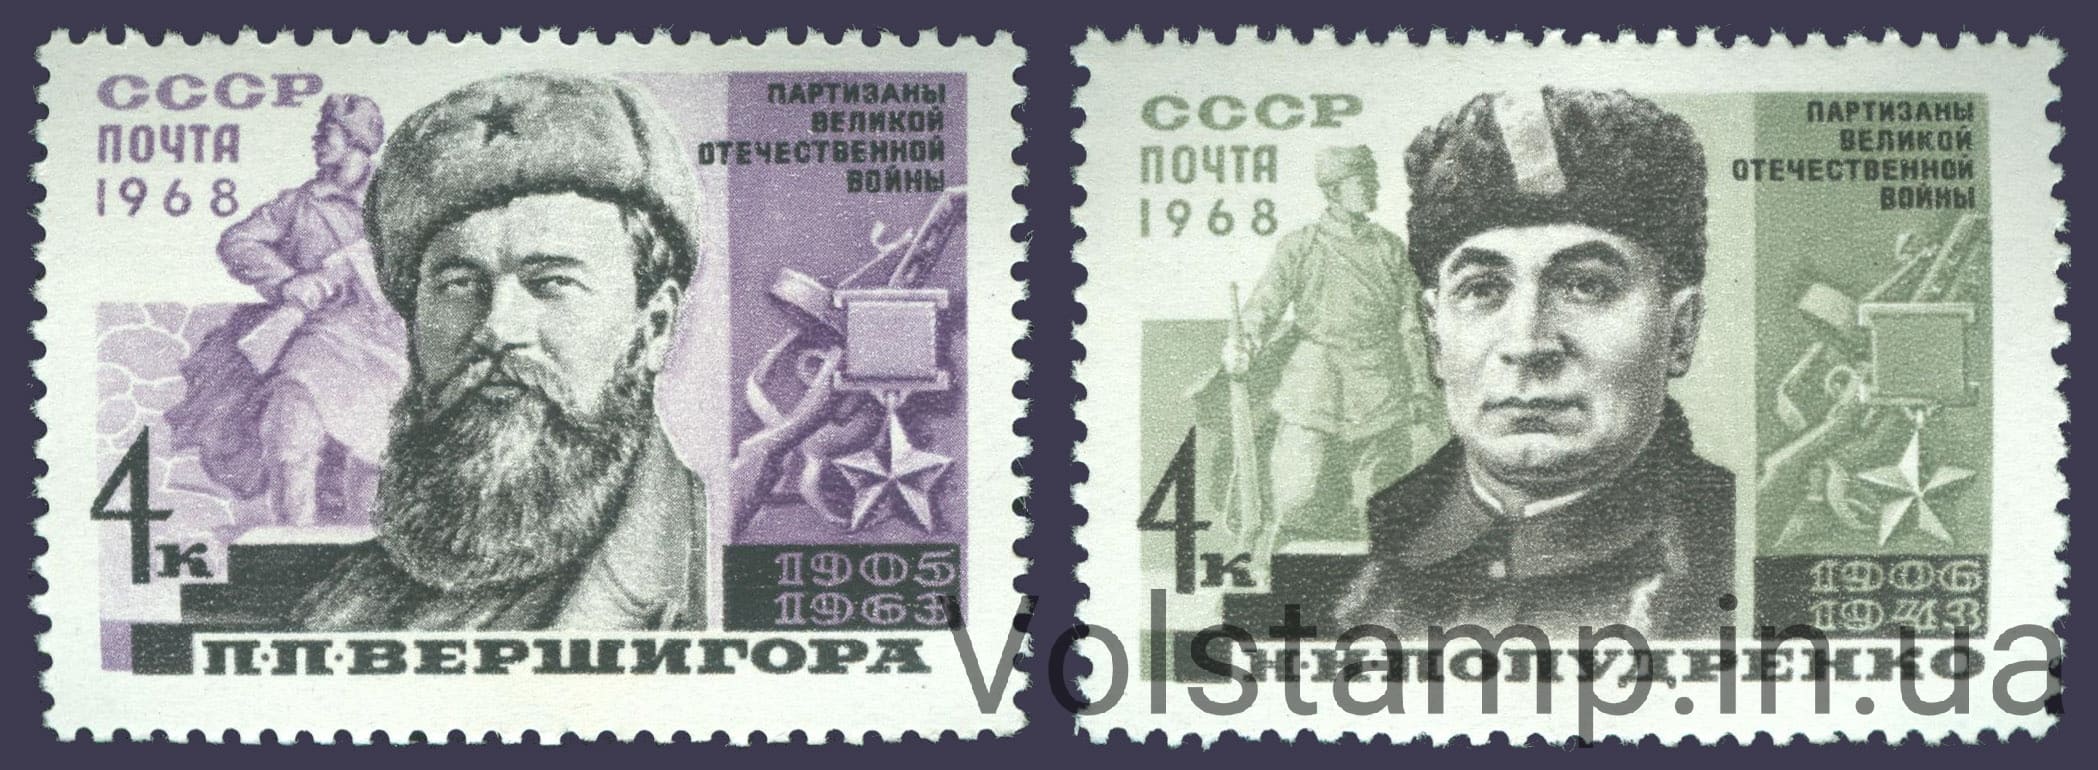 1968 серия марок Партизаны Великой Отечественной войны, Герои Советского Союза №3525-3526